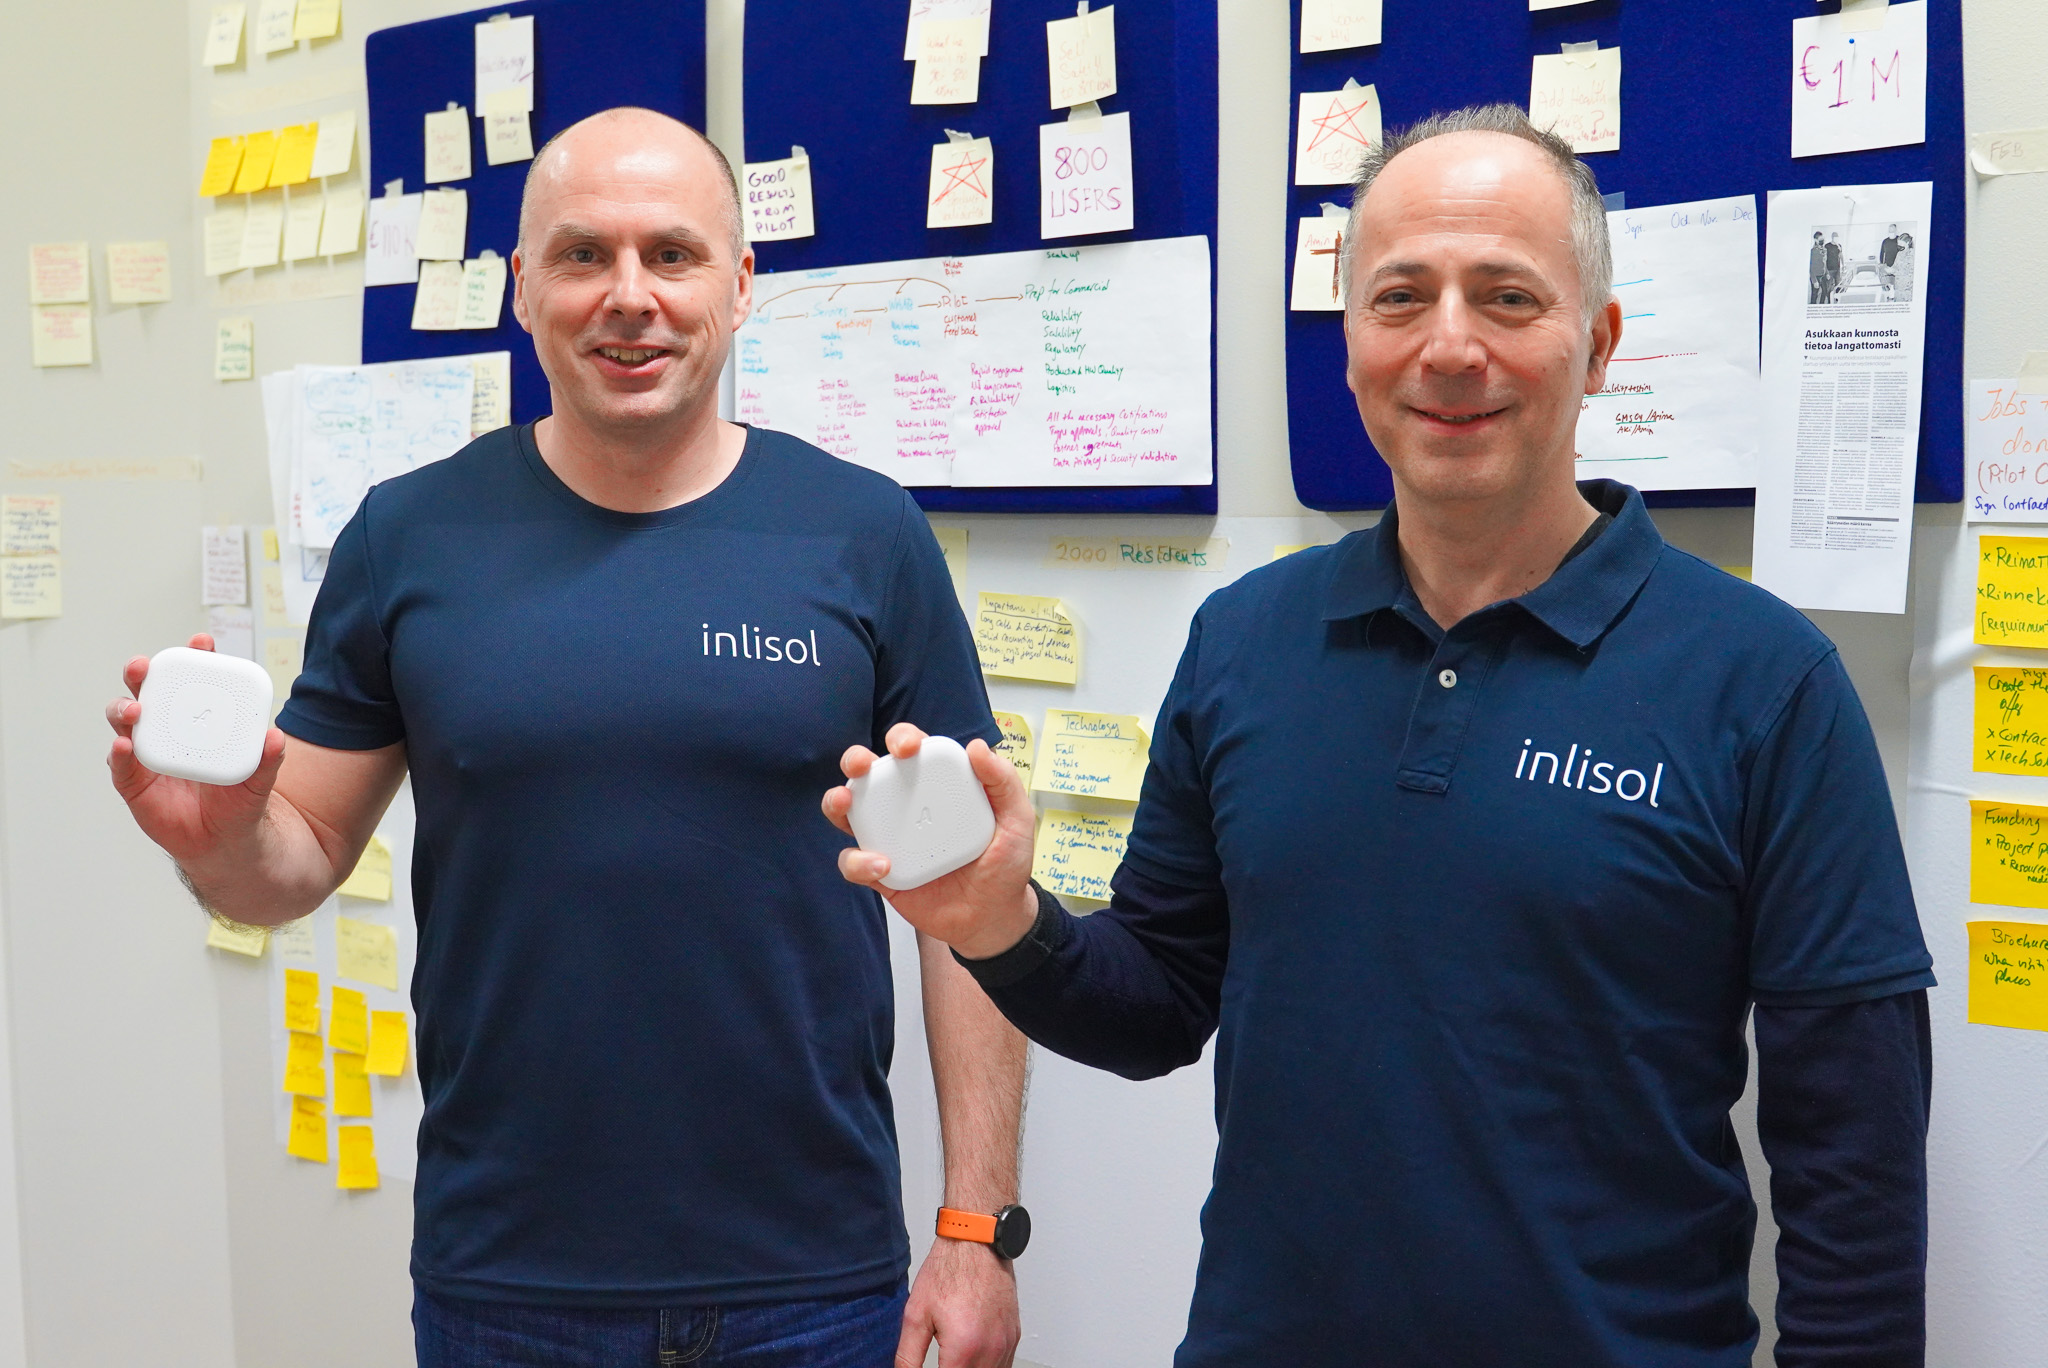 Yrityksen nimi Inlisol tulee sanoista inlife solutions (elämän ratkaisuja). Aki Nummela ja Amin Torabi haluavat luoda hyvinvointia teknologian avulla.